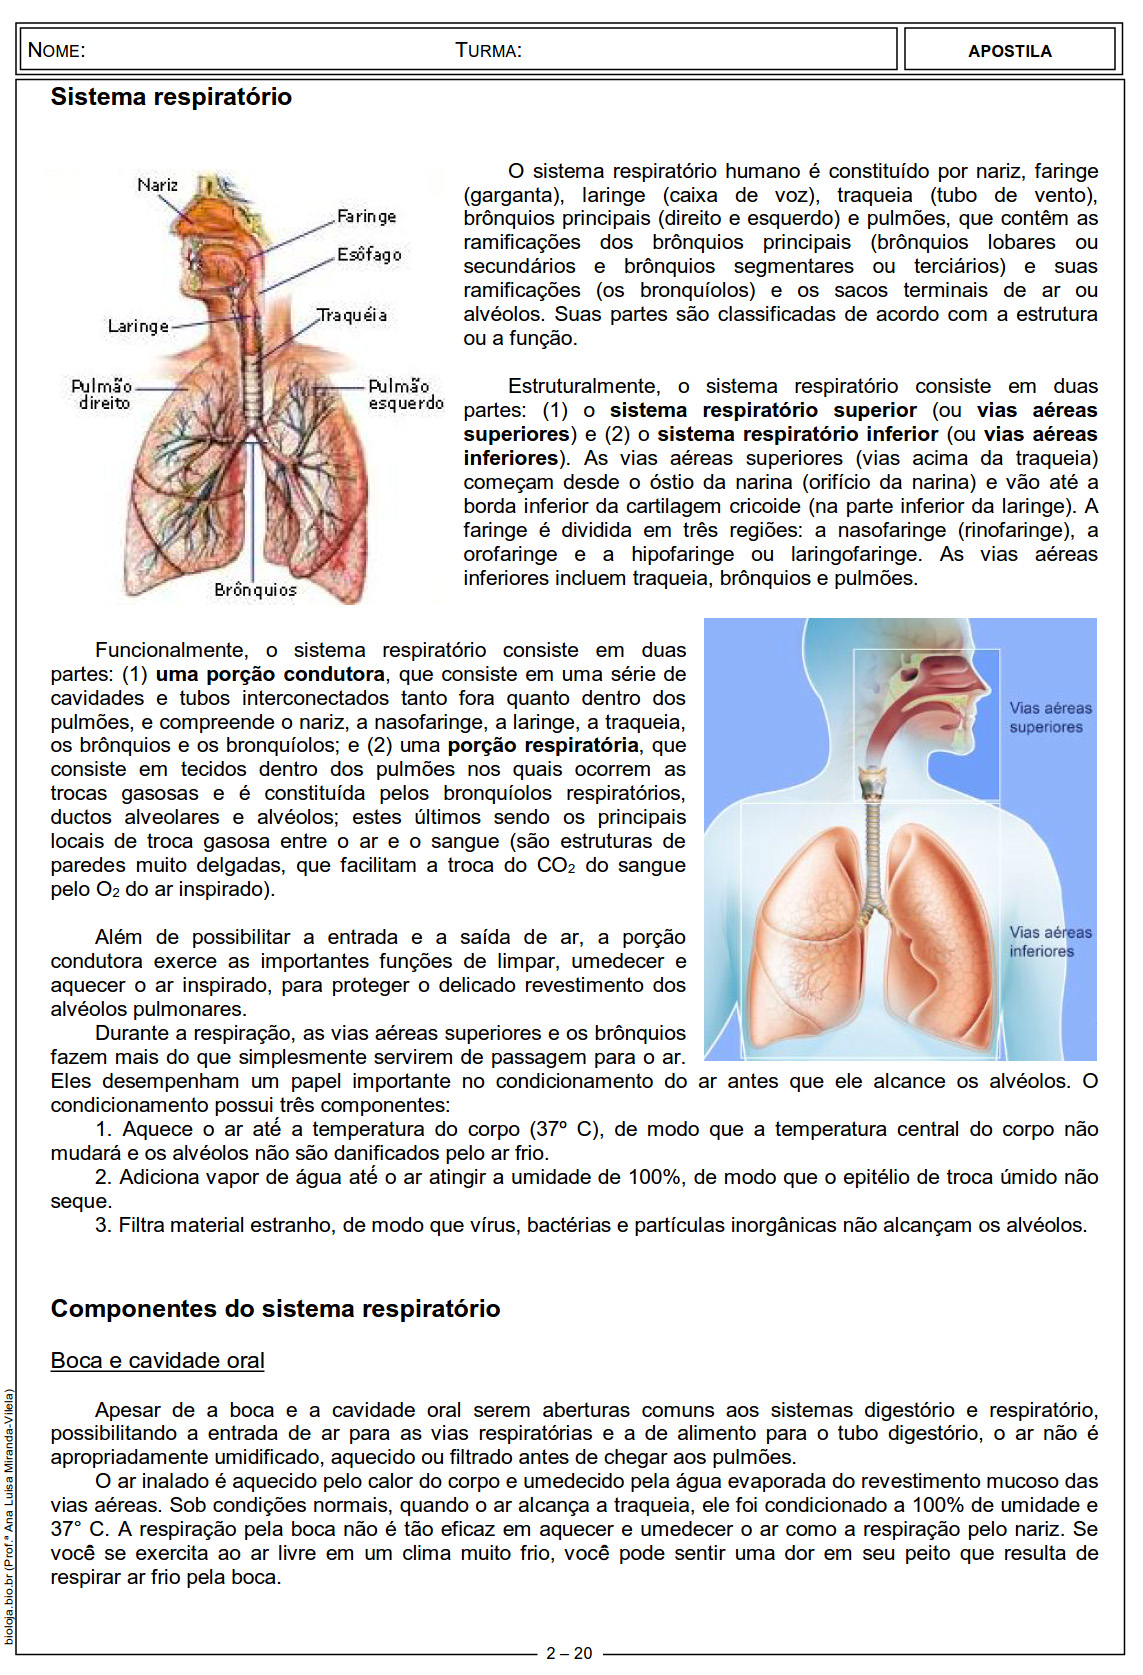 Apostila Fisiologia de órgãos e sistema III: sistema respiratório slide 2